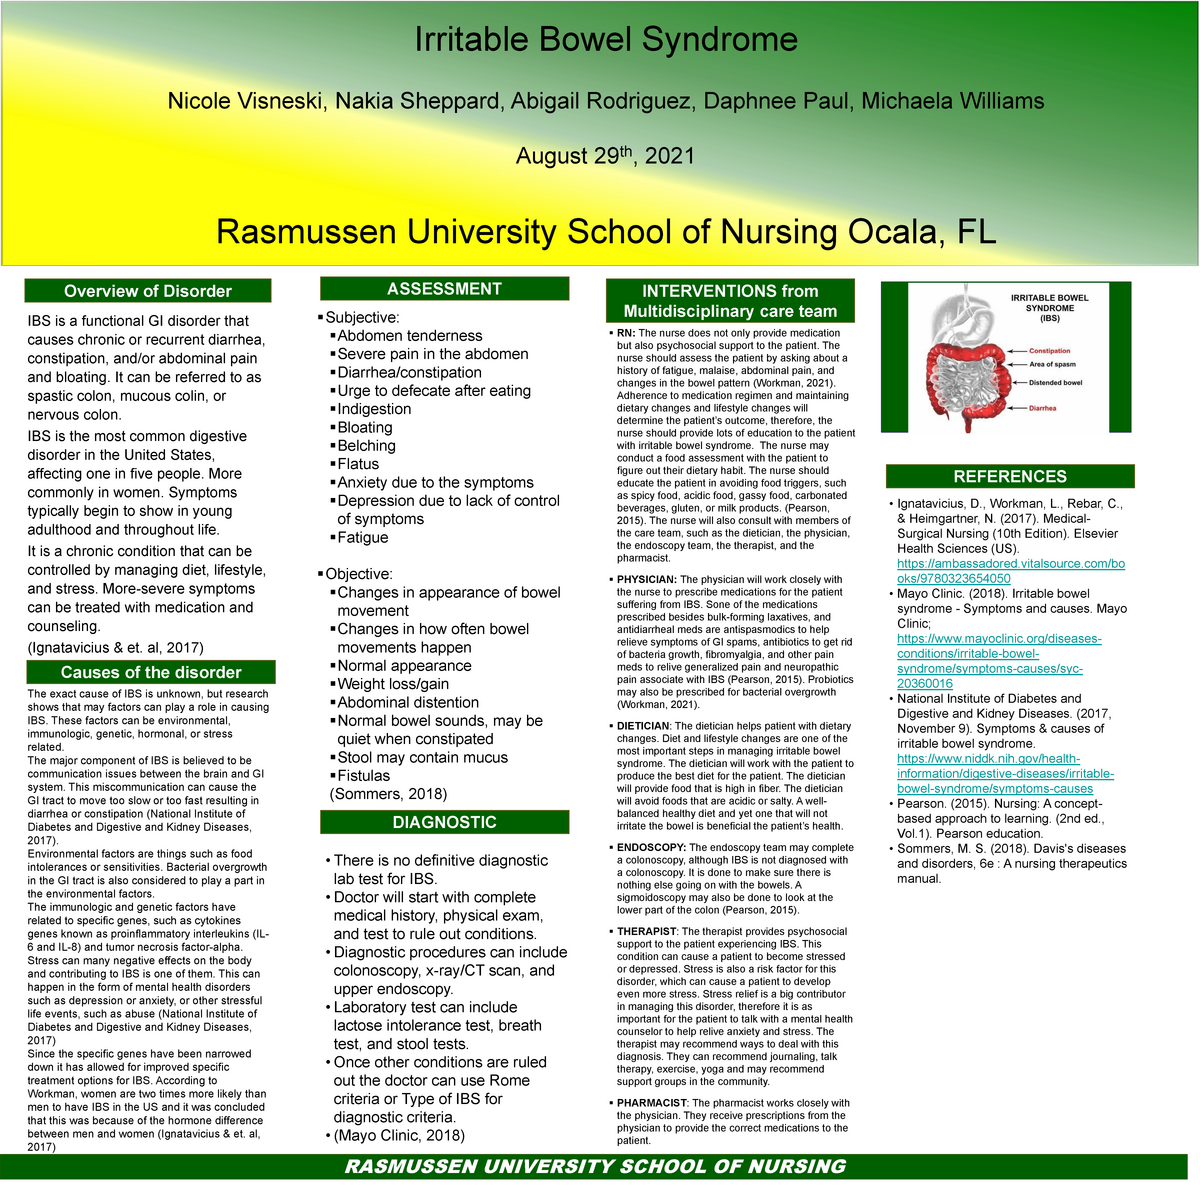 module-8-assignment-rasmussen-university-school-of-nursing-overview